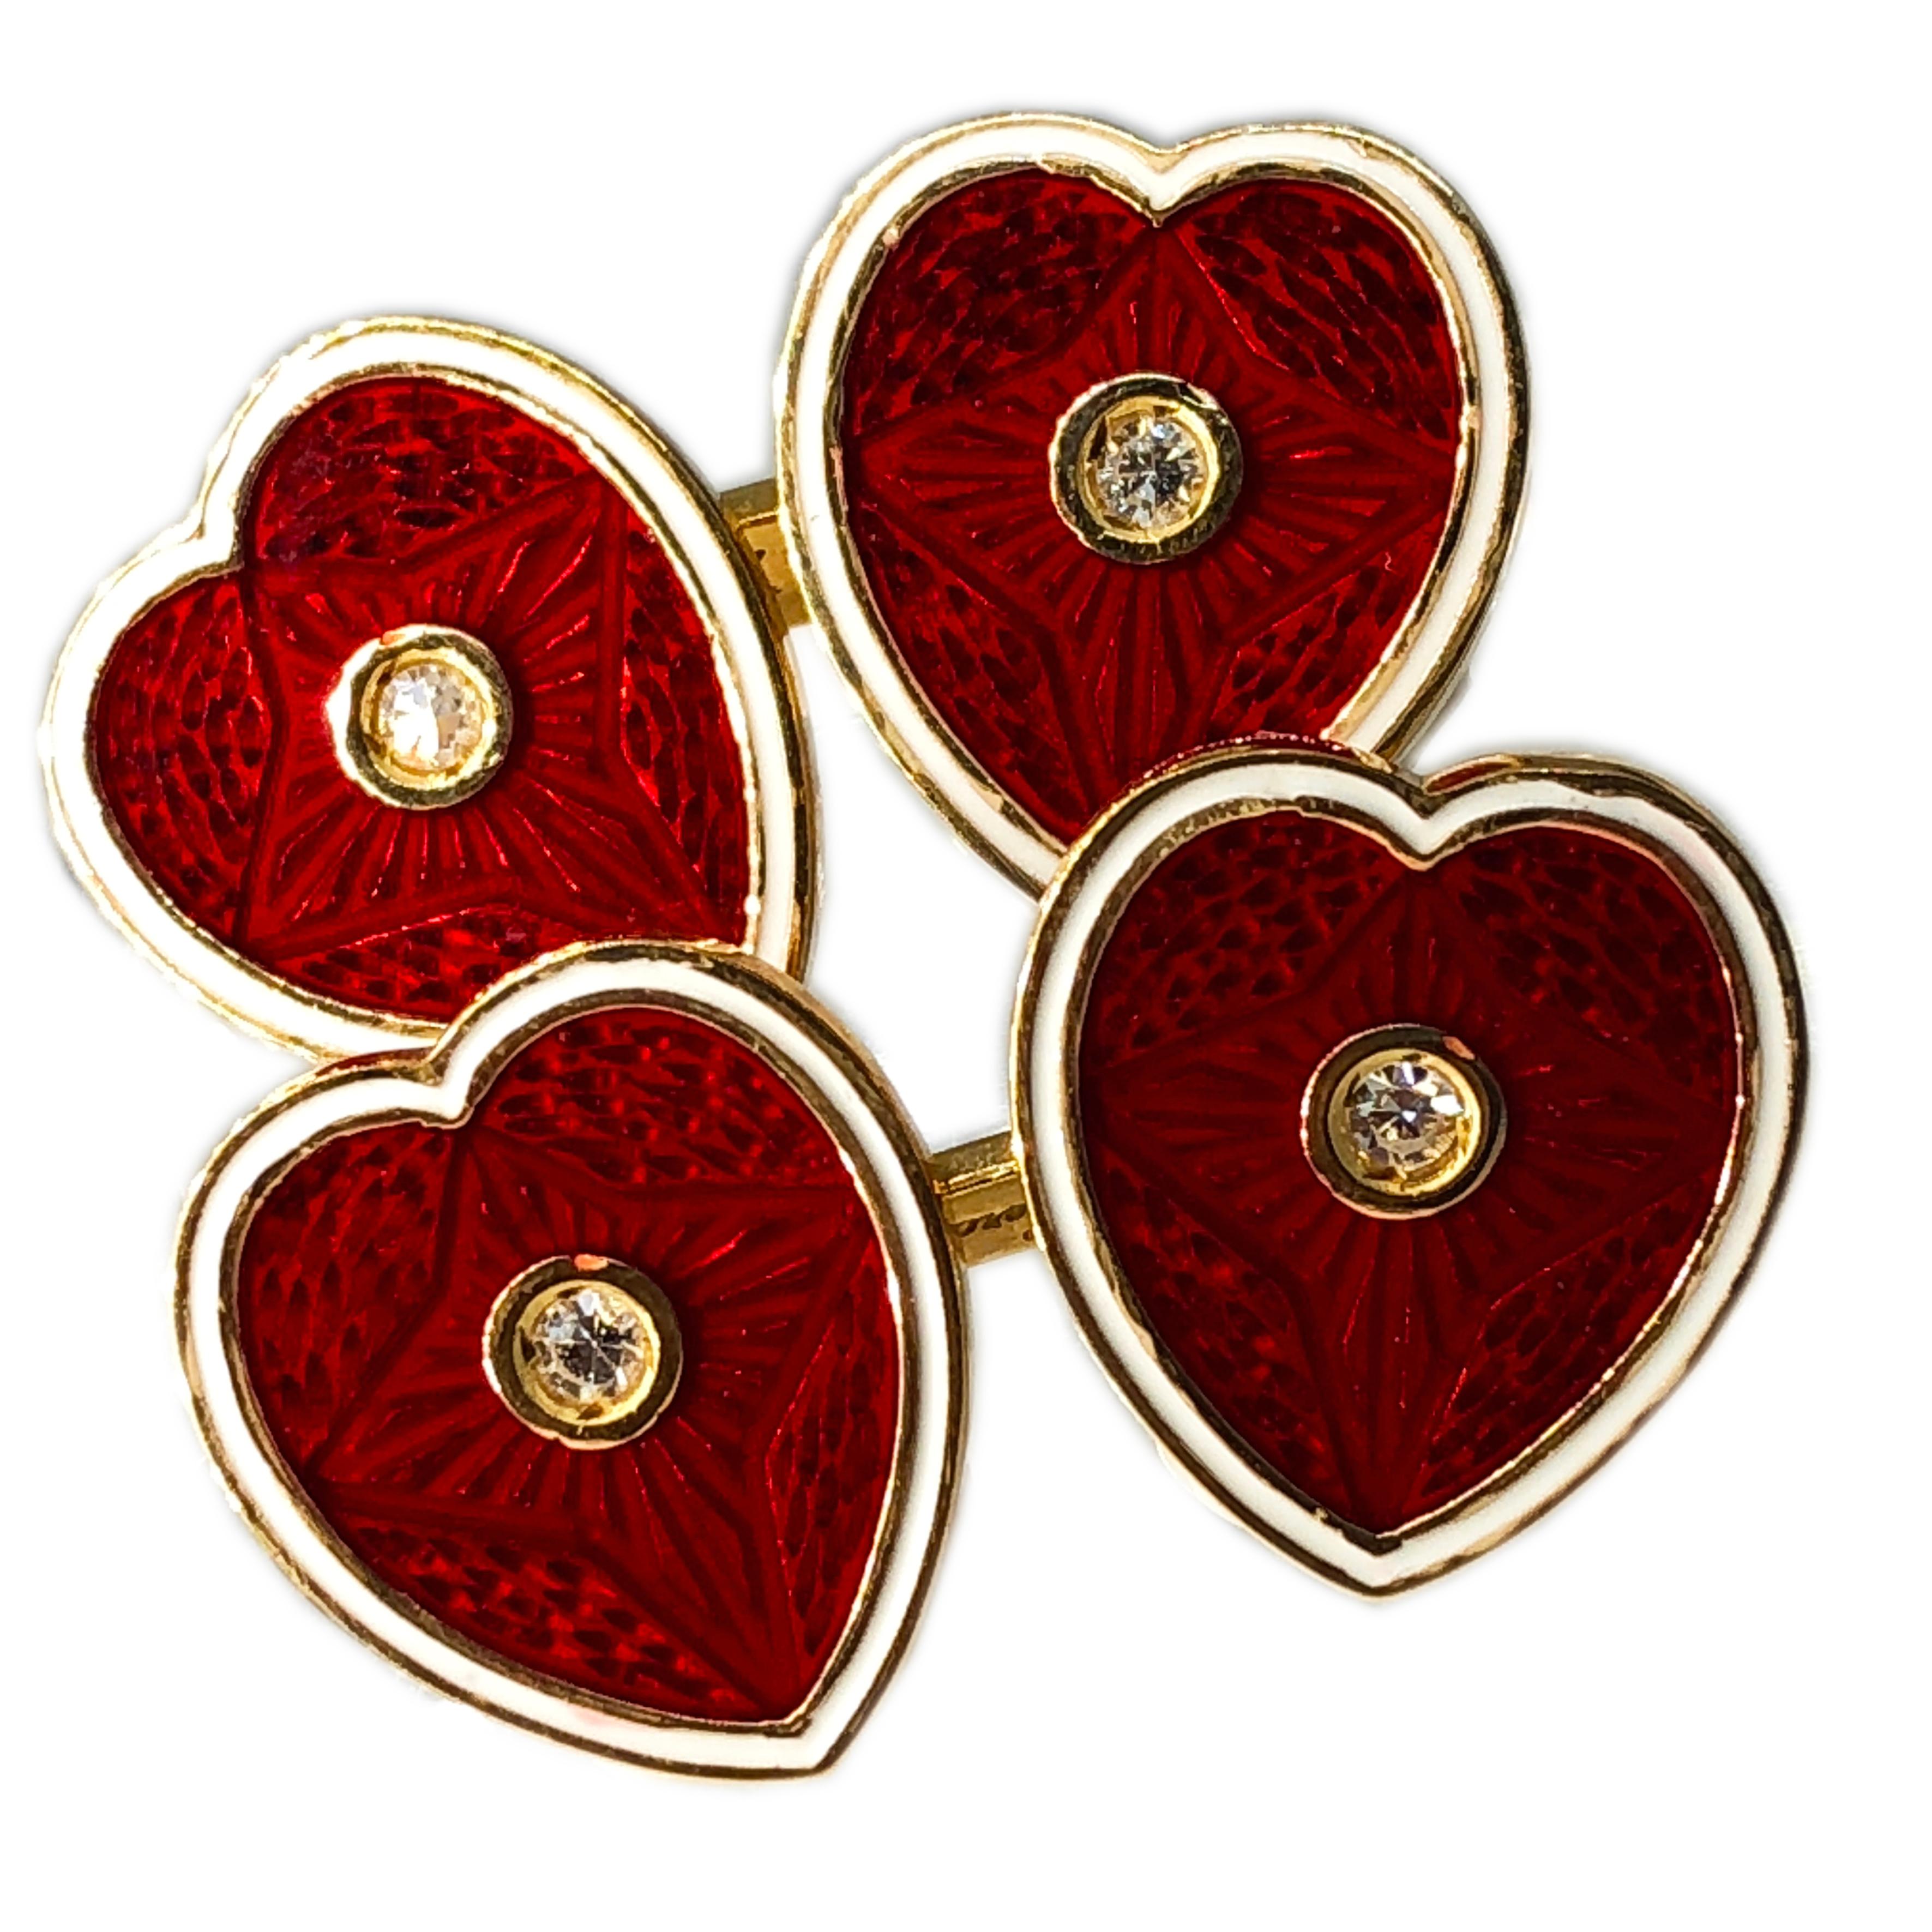 Schicke und glamouröse, zeitlose, aber nicht traditionelle Manschettenknöpfe: Die roten Herzen am weißen Rand sind in antiker Champlevé-Technik emailliert, vier weiße Diamanten (0,15 Karat) in einer Gelbgoldfassung vervollständigen dieses kleine